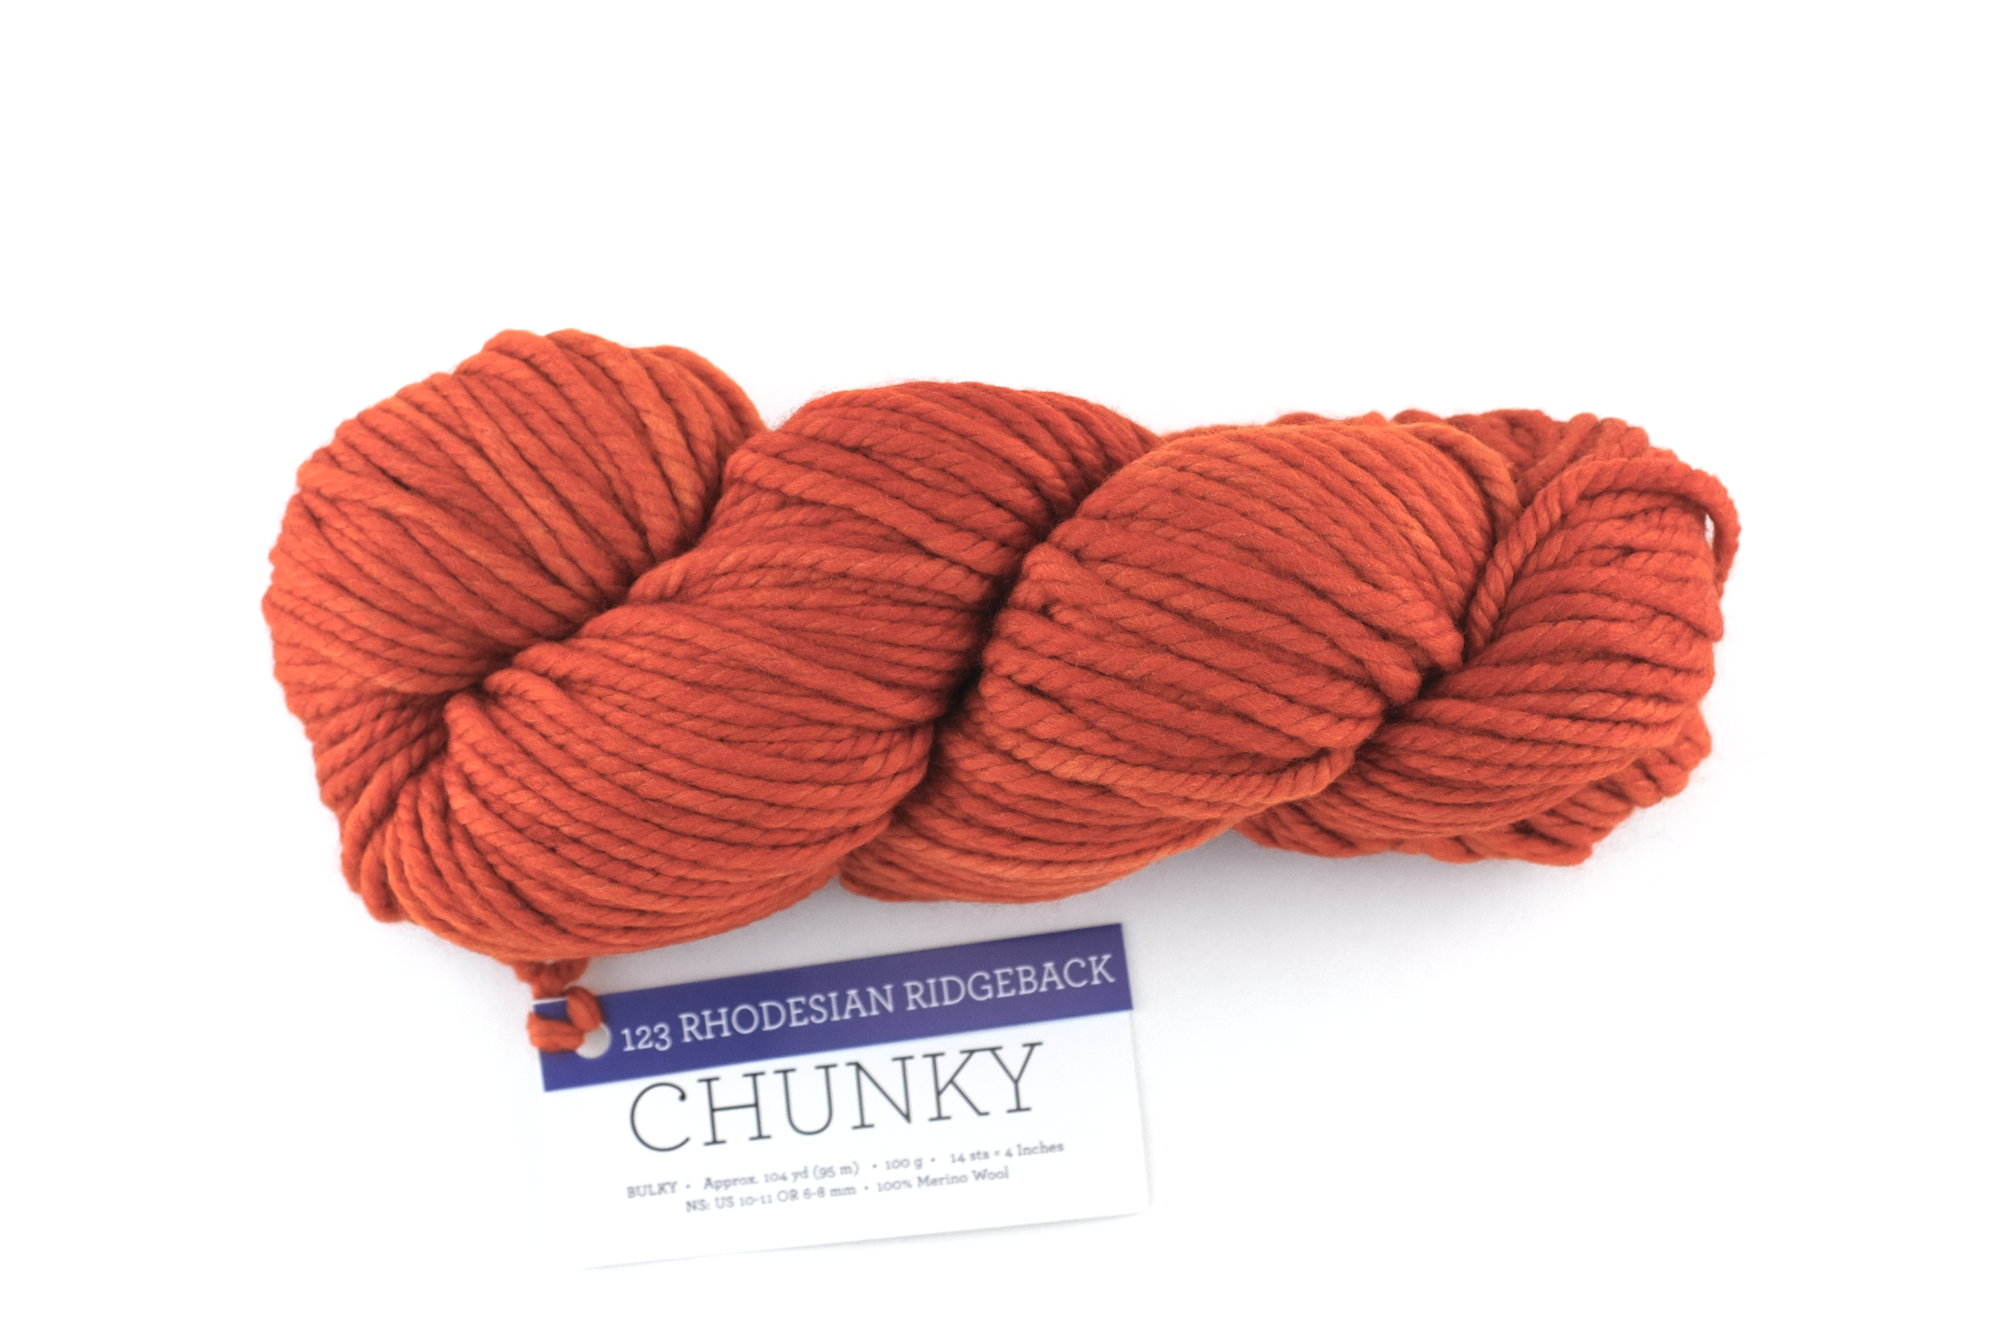 Big Bob Chunky merino yarn 9.9 lbsfor armknitting